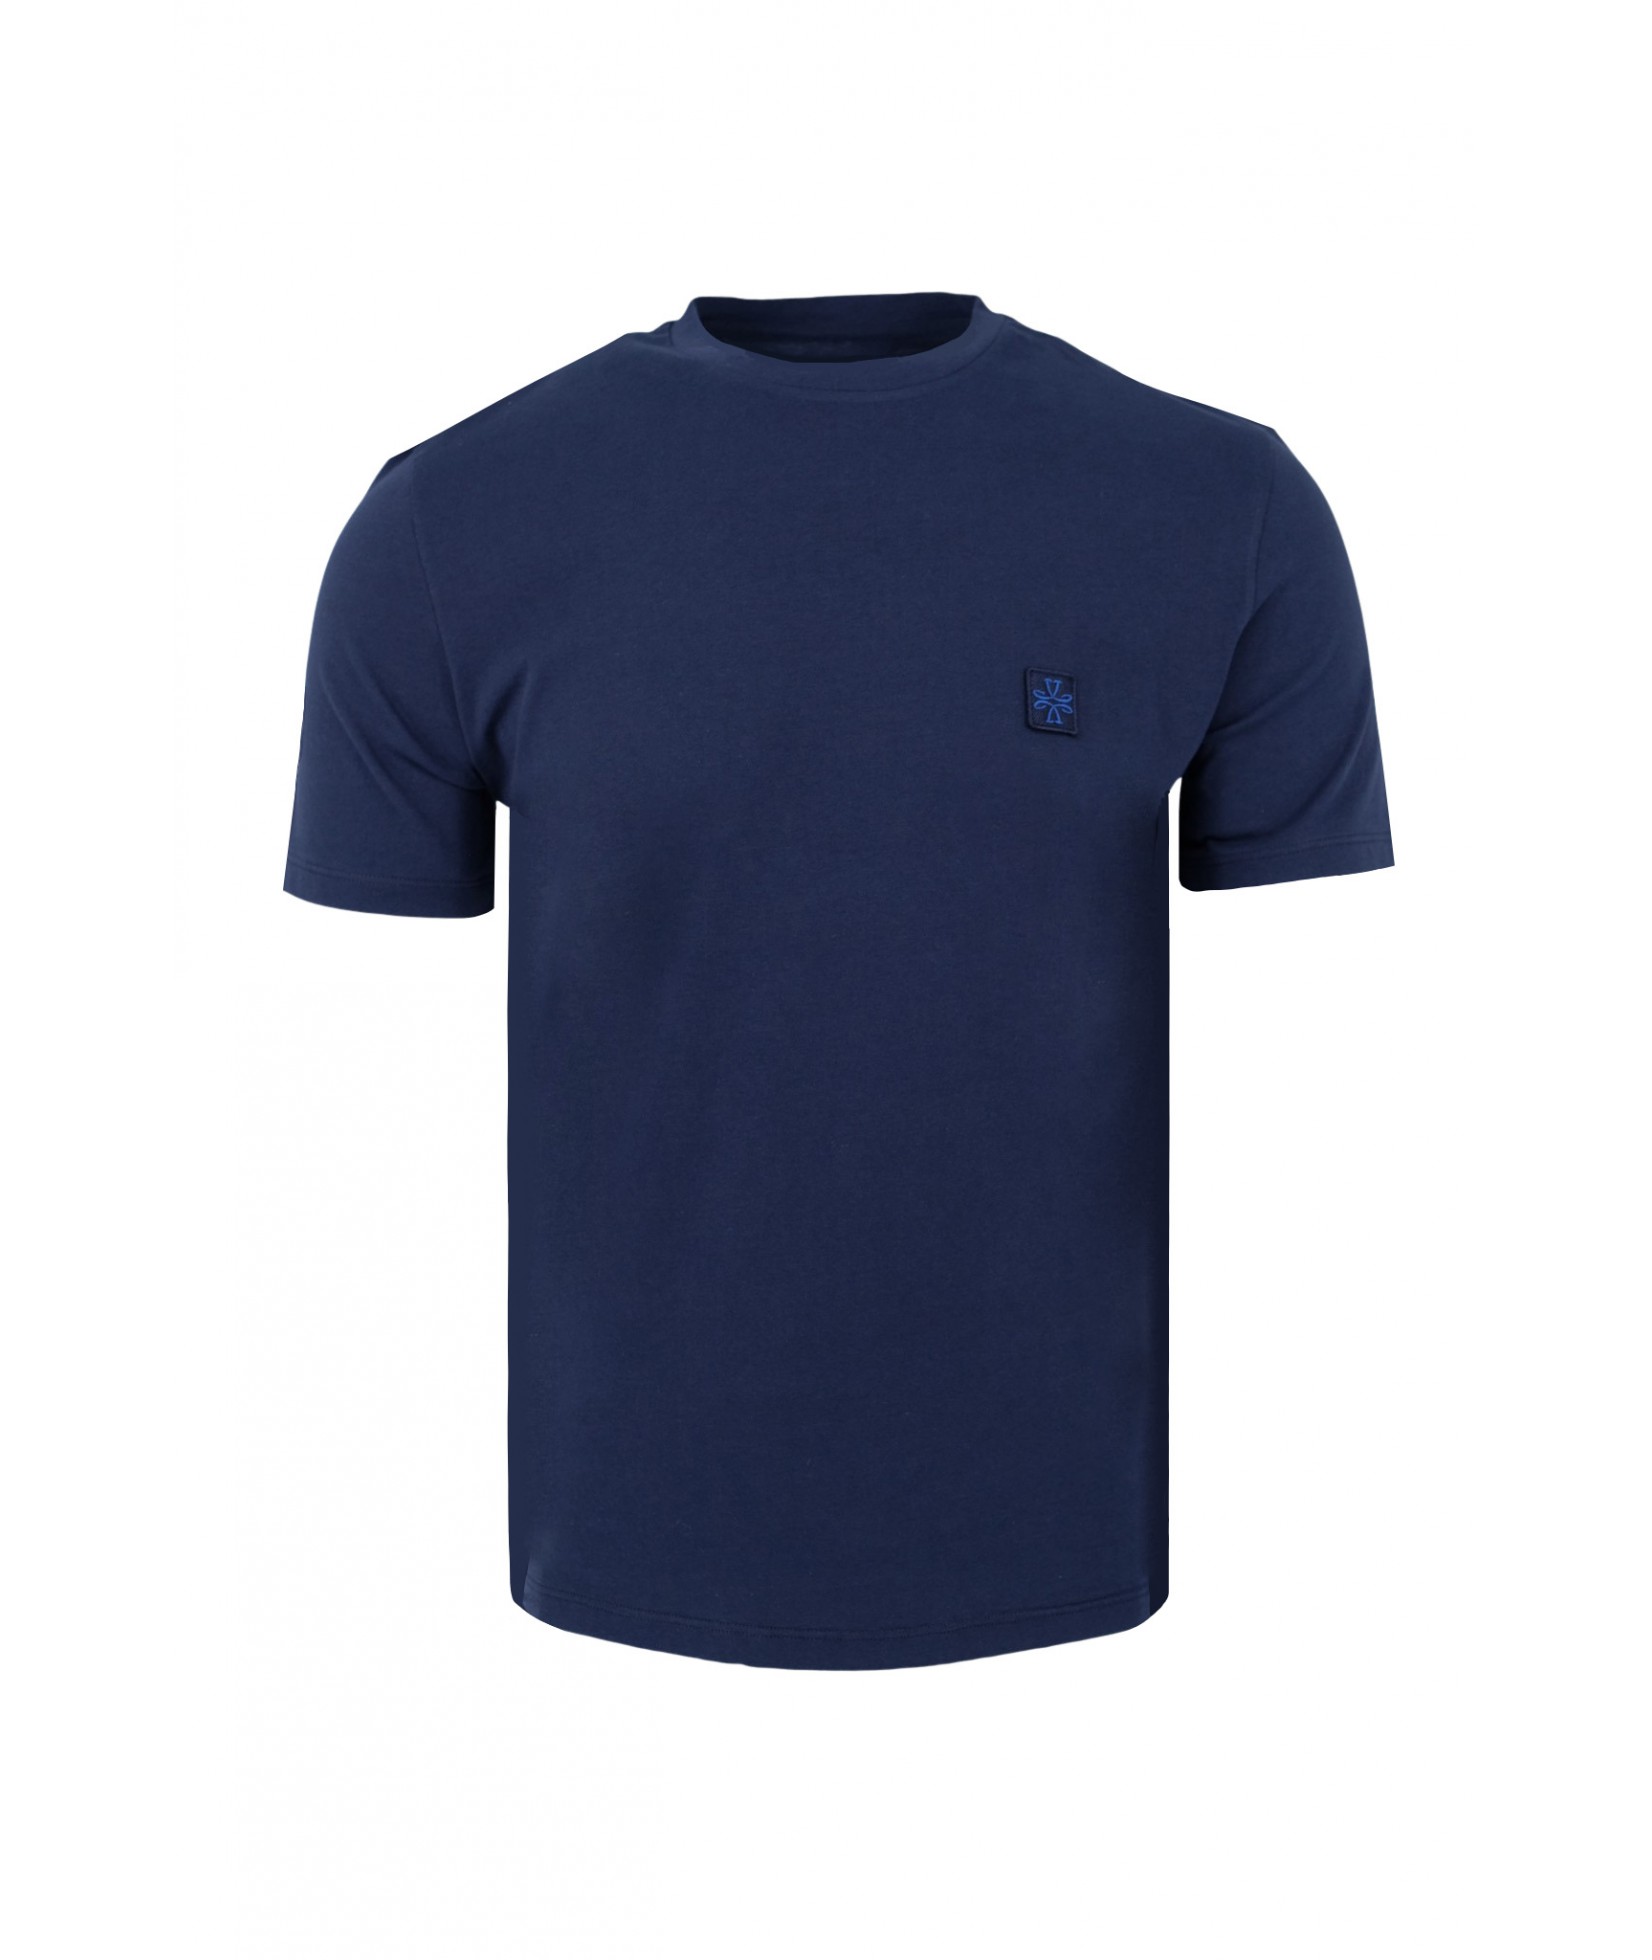 Jacob Cohen T-shirt dark blue 4476 Y93 (38802)